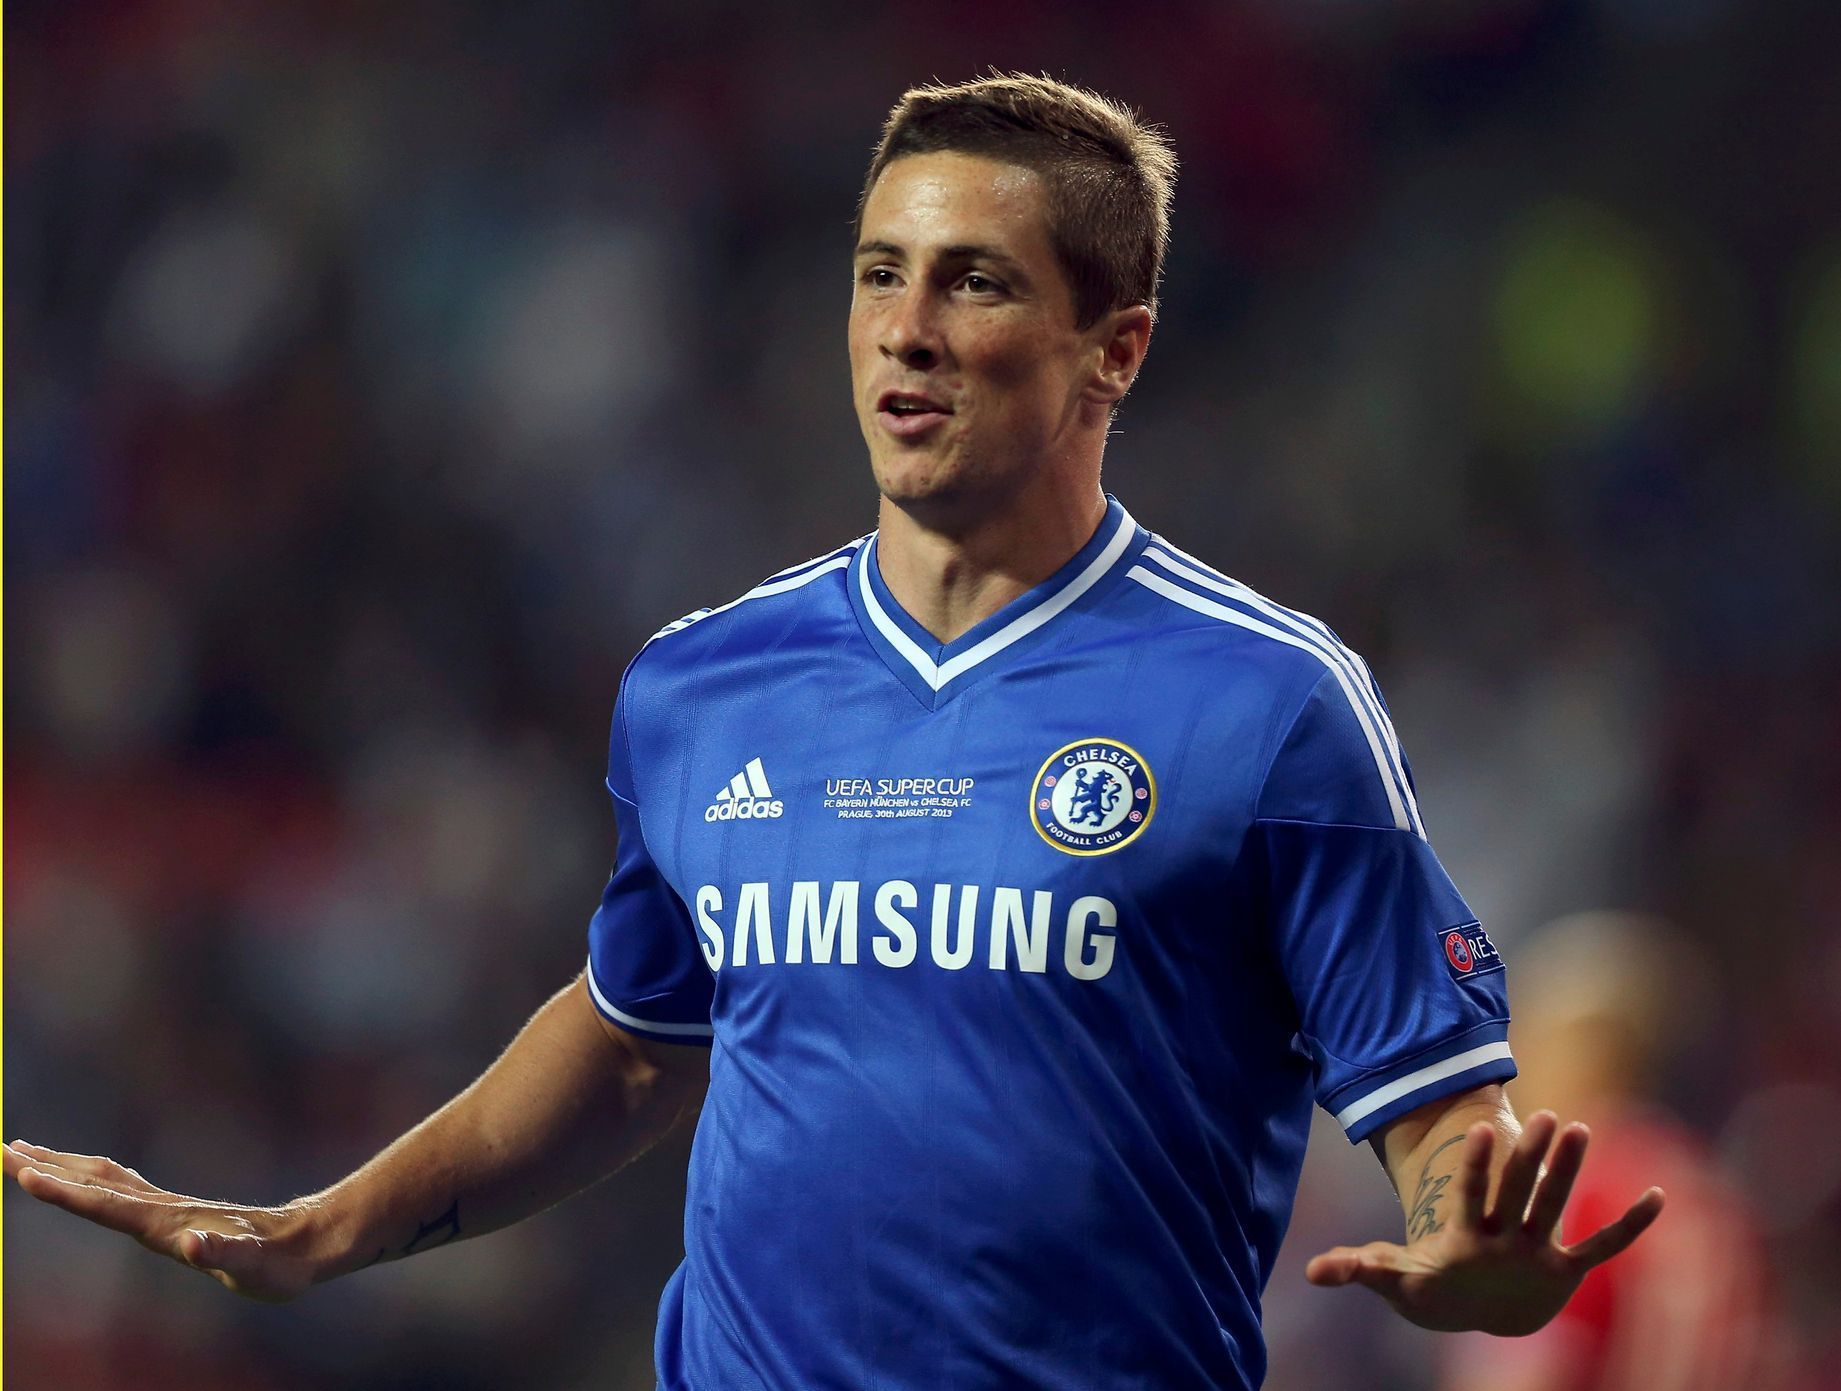 Torres slaví gól do sítě Bayernu v Evropském superpoháru